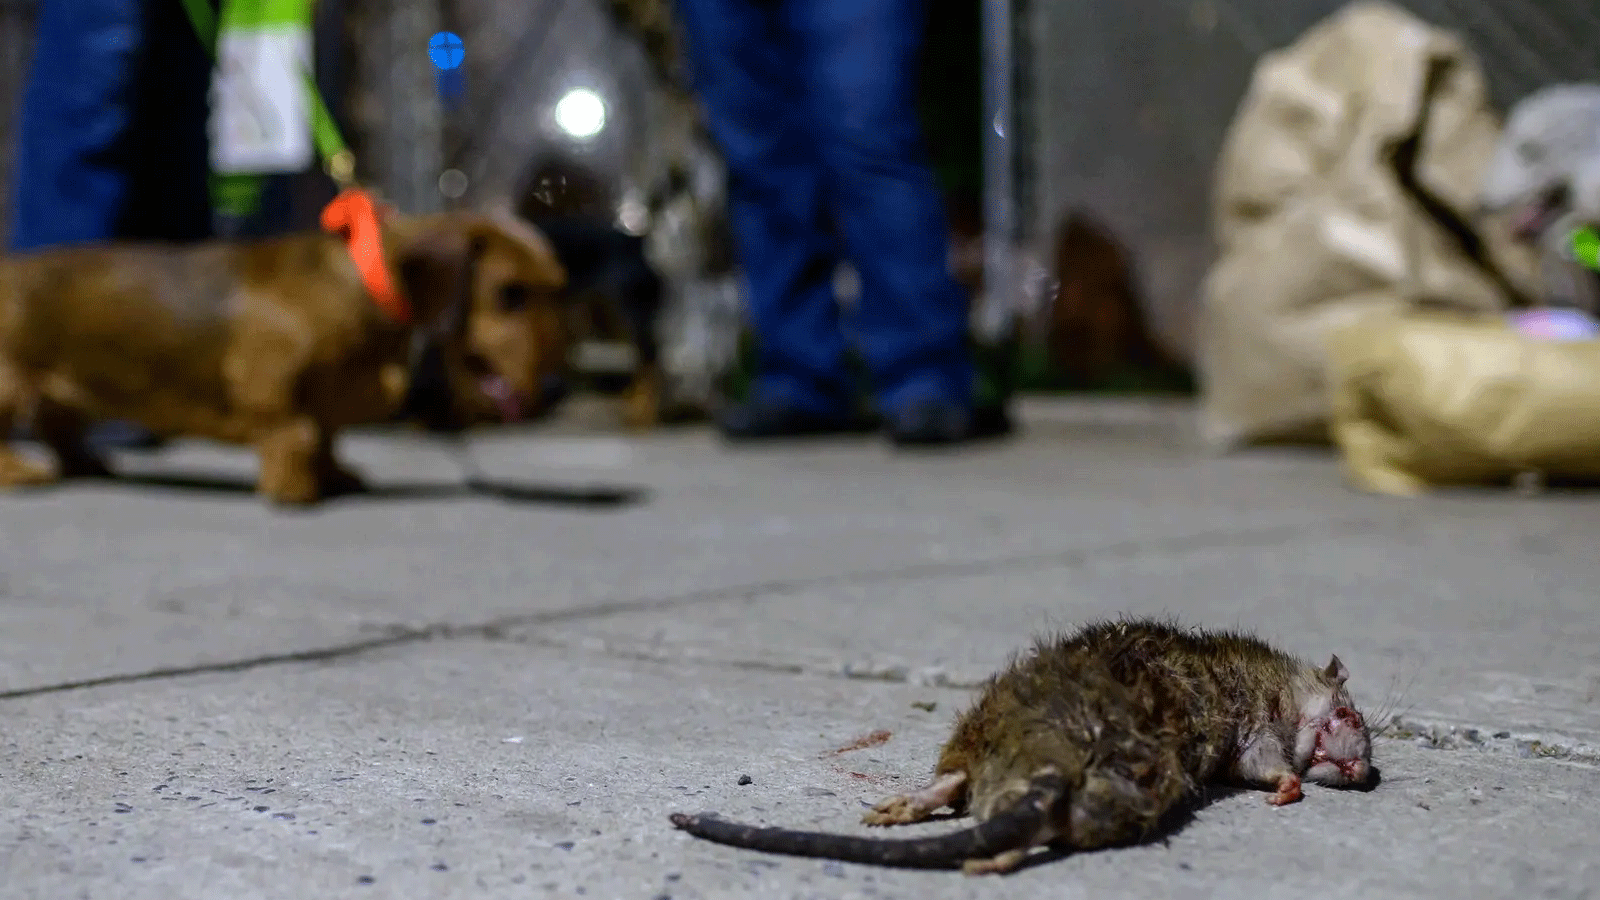 في عام 2021، بعد الوباء، نظمت جمعية خاصة لسكان مانهاتن تسمى R.A.T.S عمليات صيد مع كلابهم لقتل أكبر عدد ممكن من الفئران